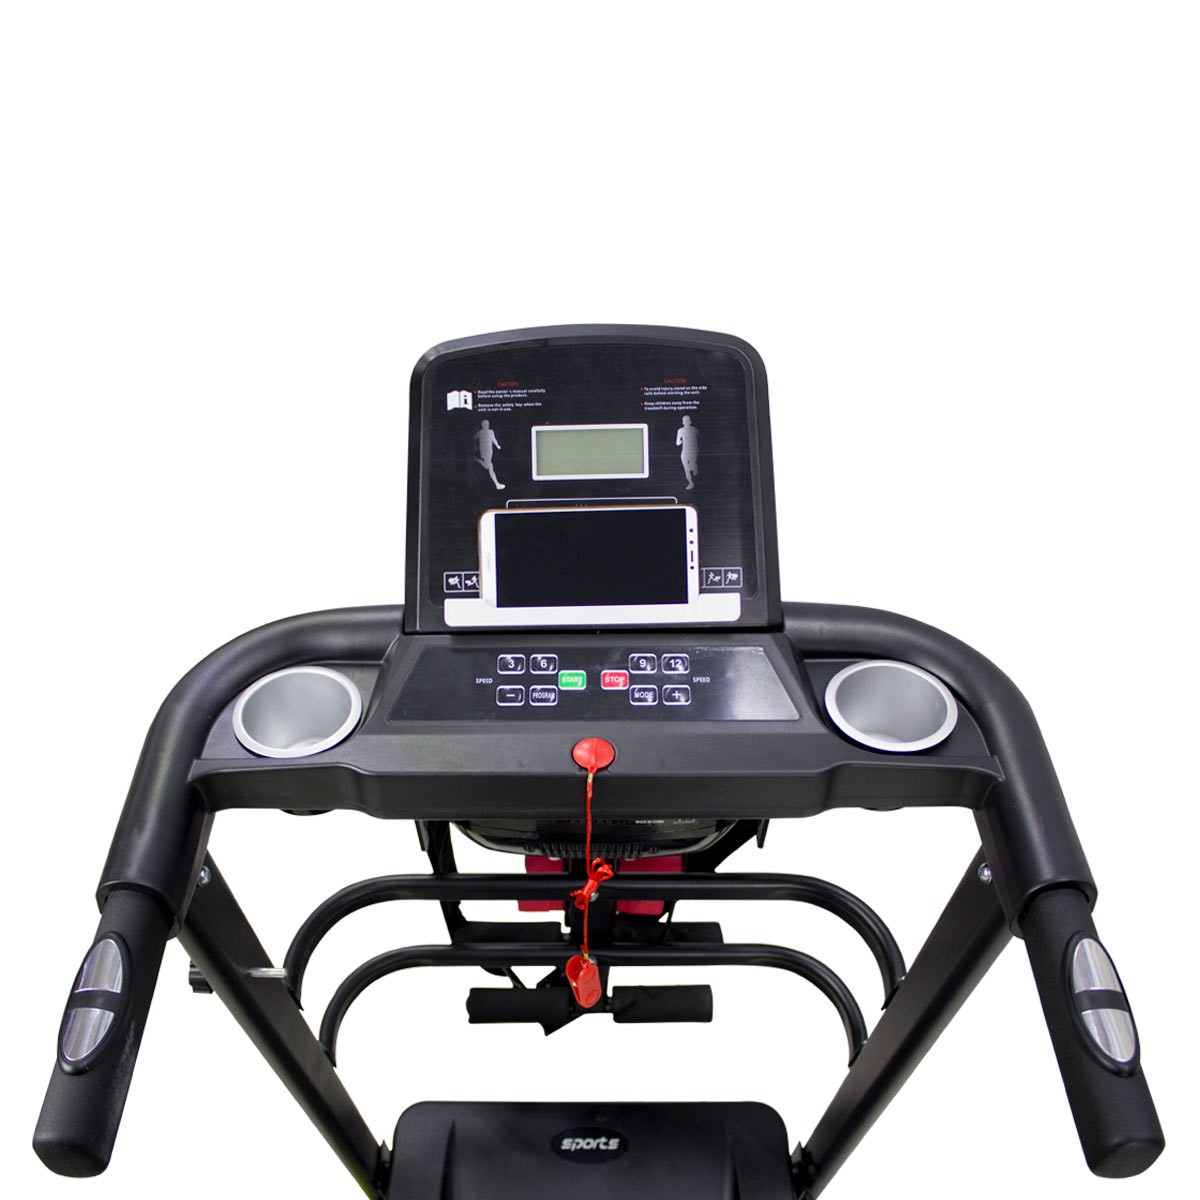 Caminadora Cinta de Correr Electrica Hogar Gym 110 V 2.0 HP con Display A75 Kingsman